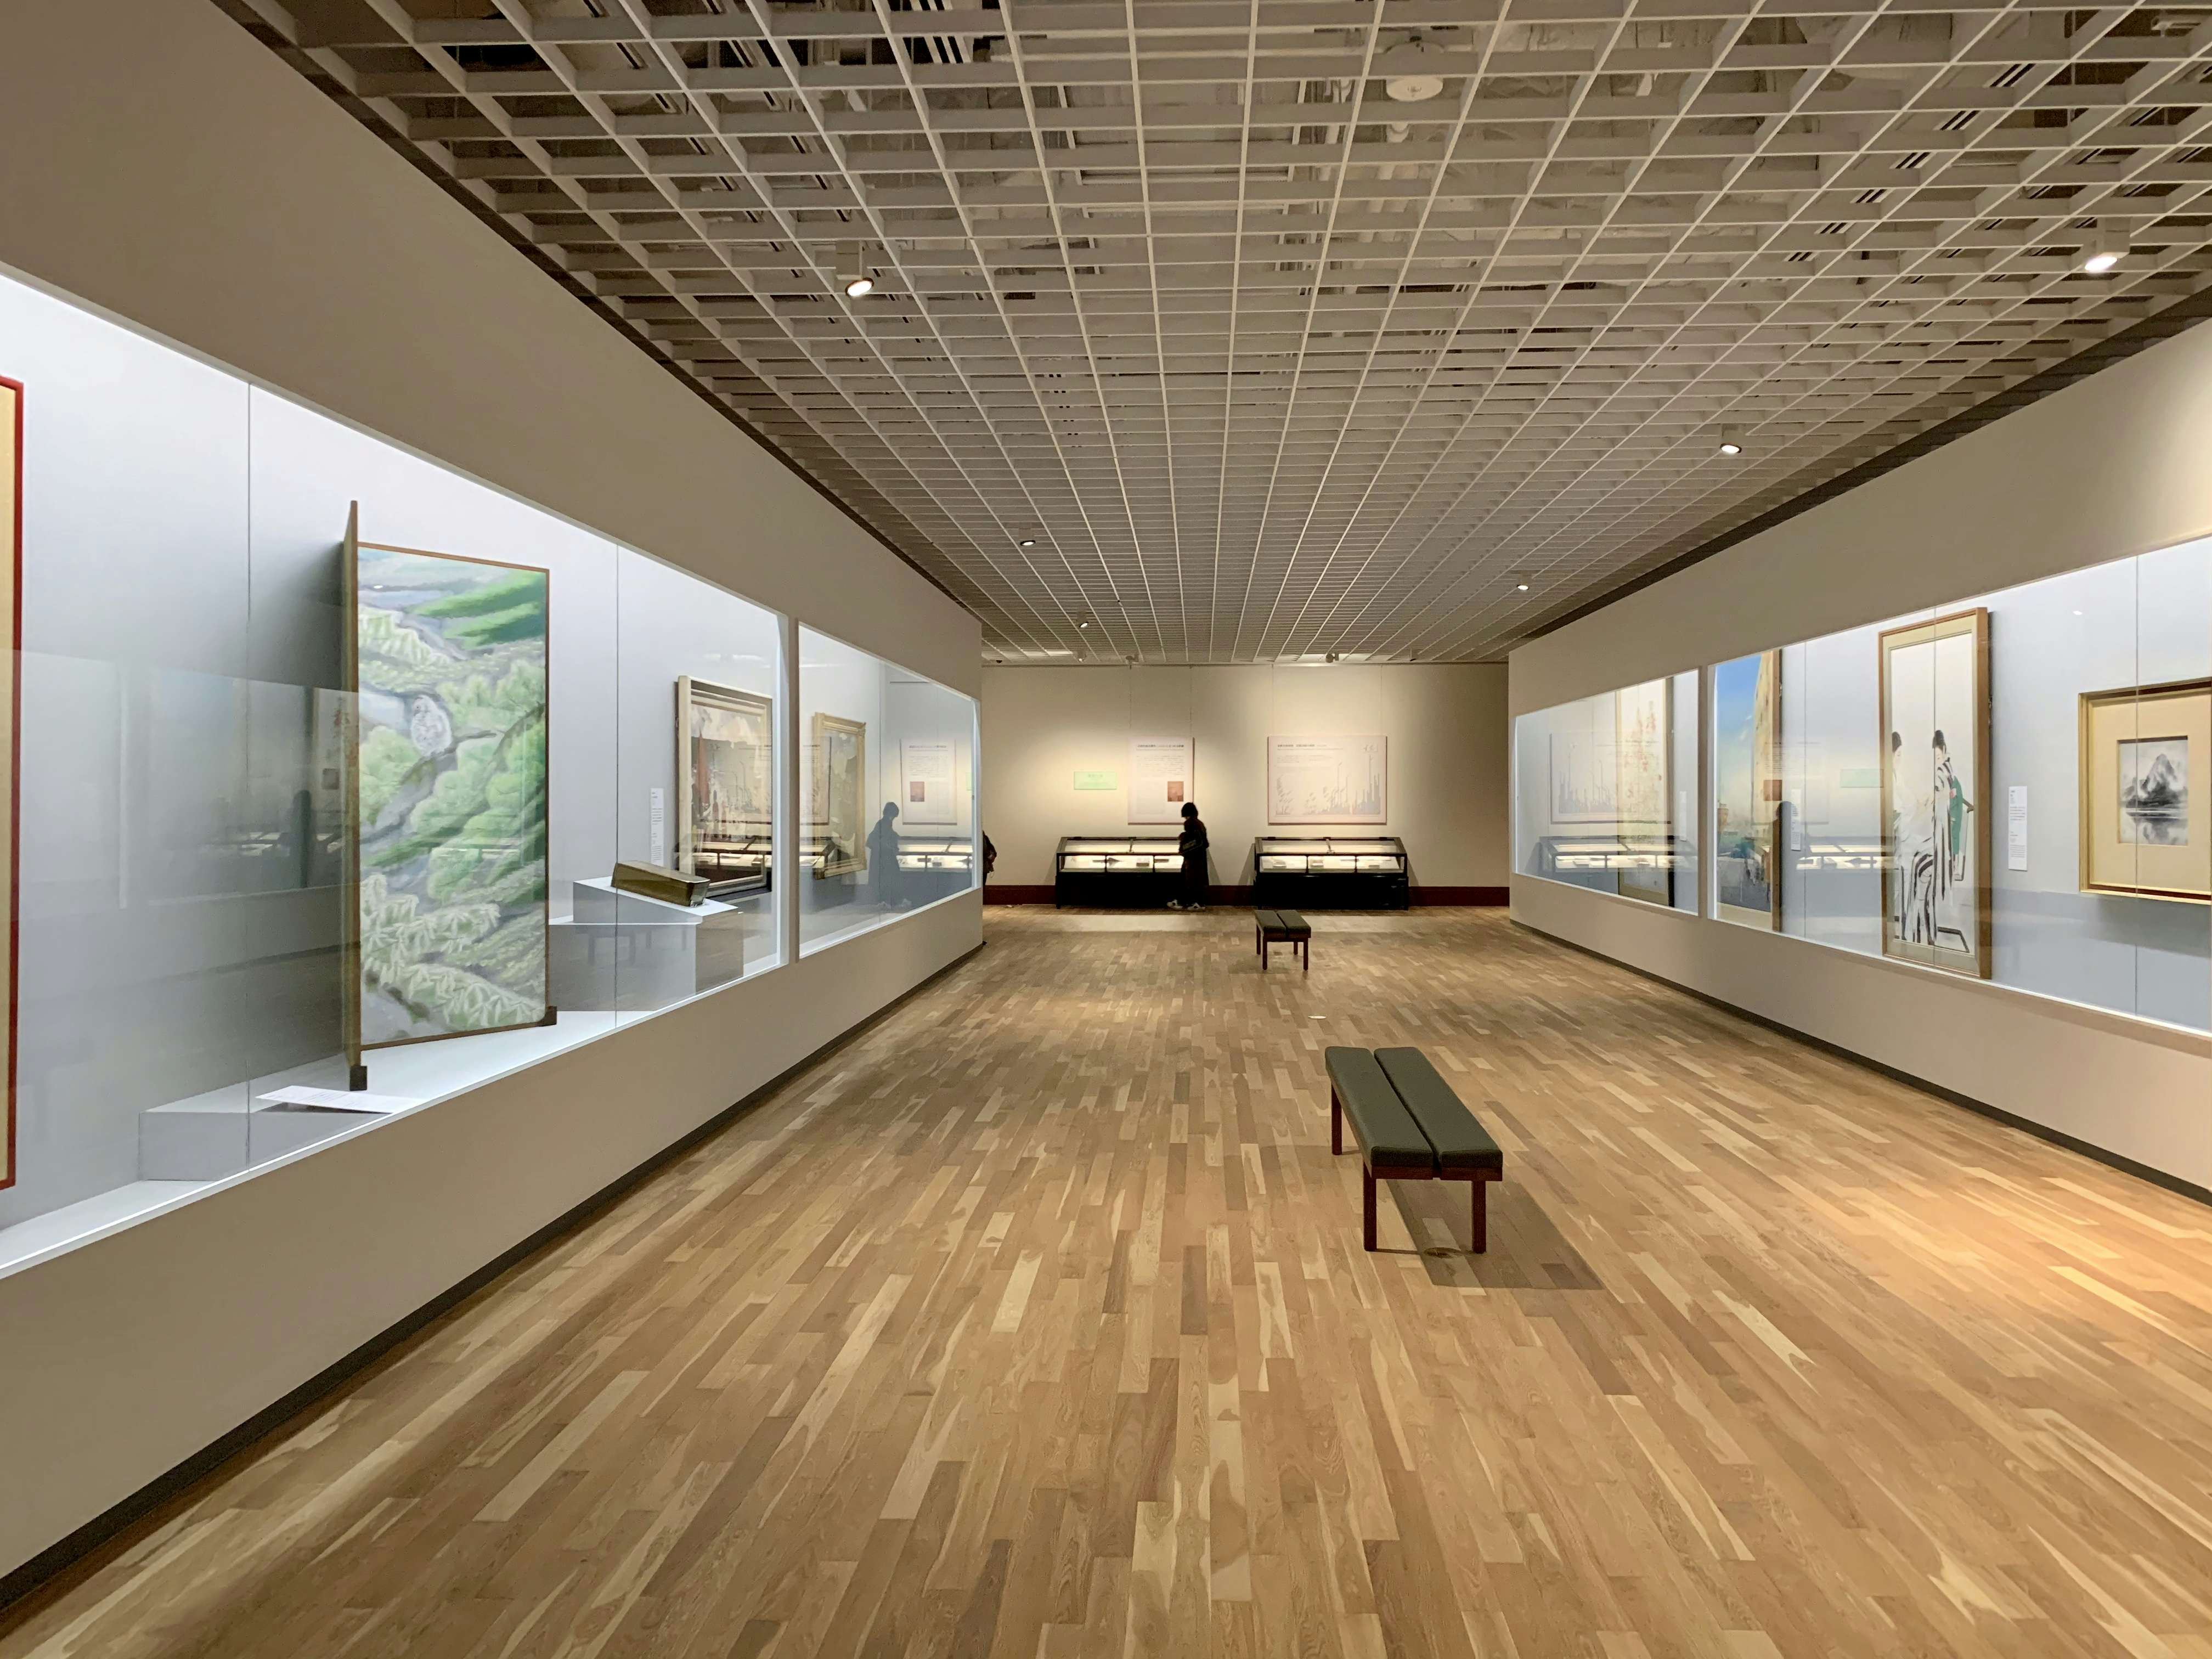 京都市京セラ美術館がついに開館。こけら落としの「杉本博司 瑠璃の